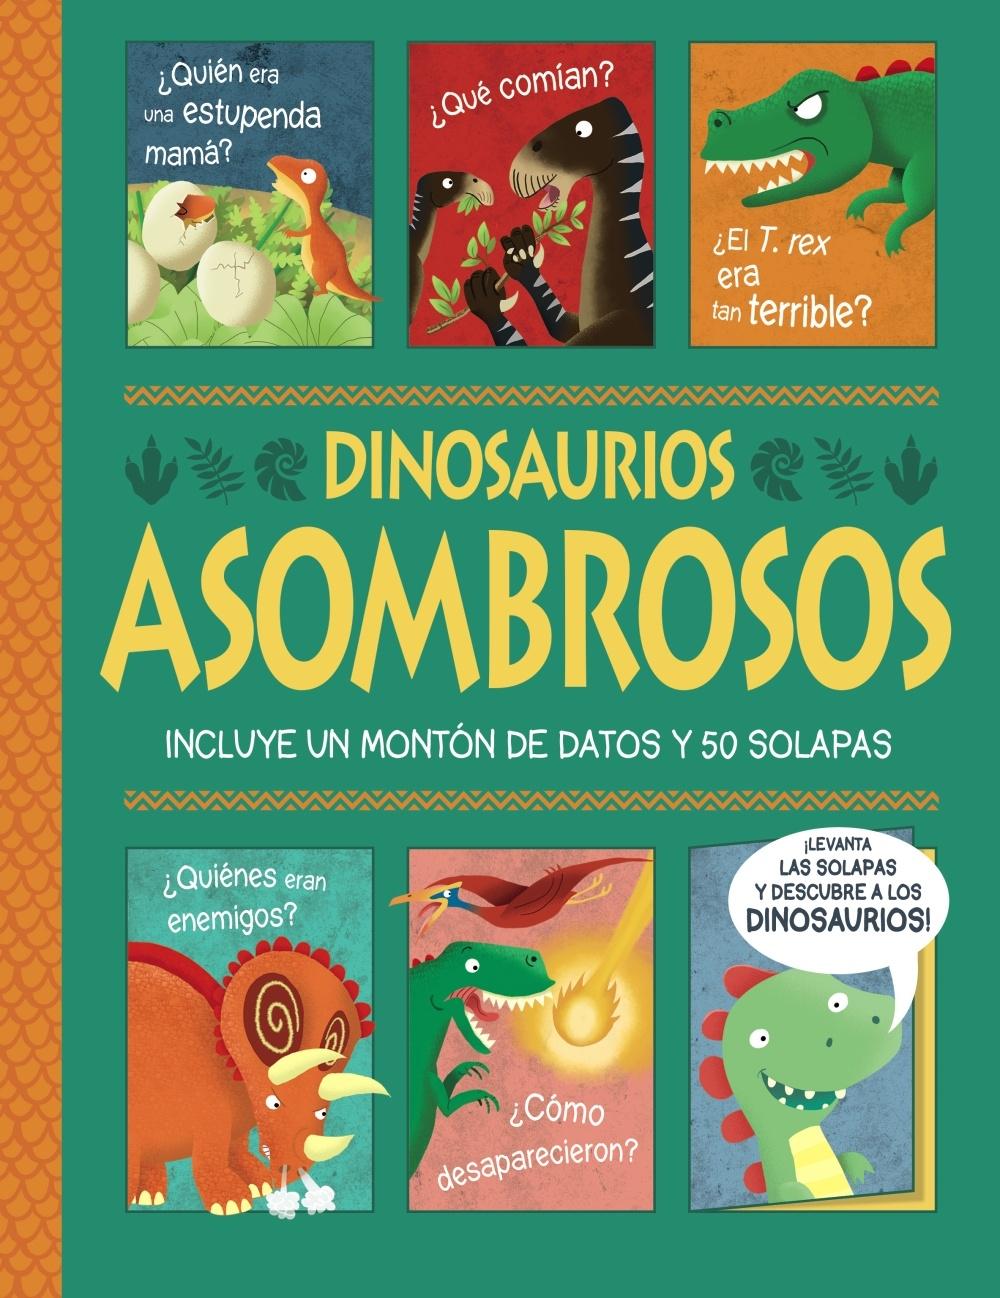 Dinosaurios asombrosos. ¡Un libro con solapas!. 